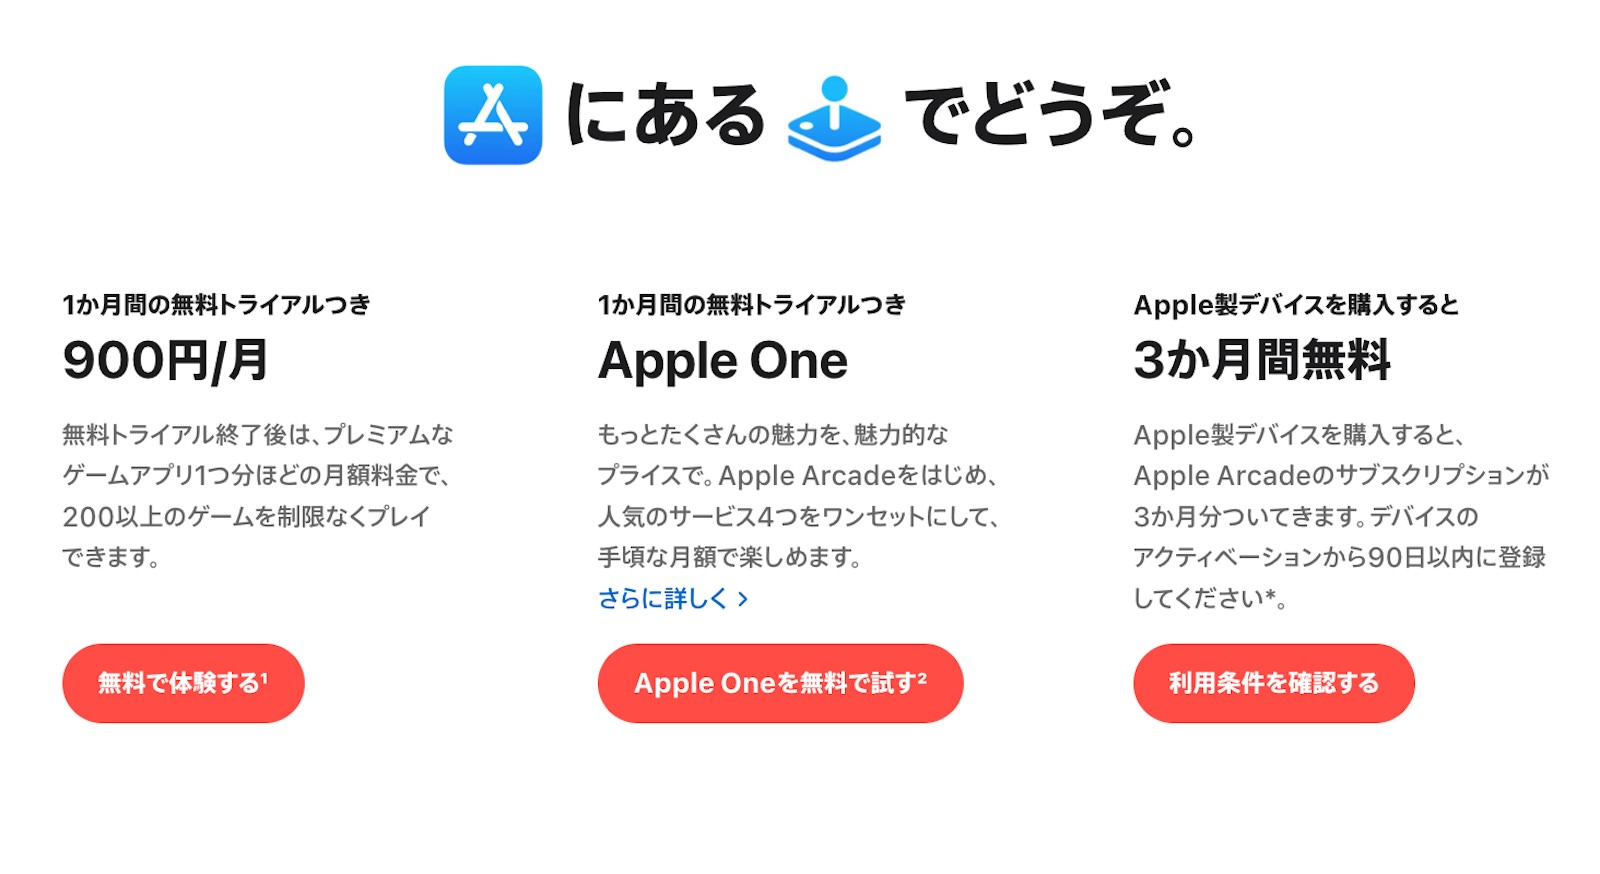 Apple-Arcade-price-raise-in-japan-1.jpg